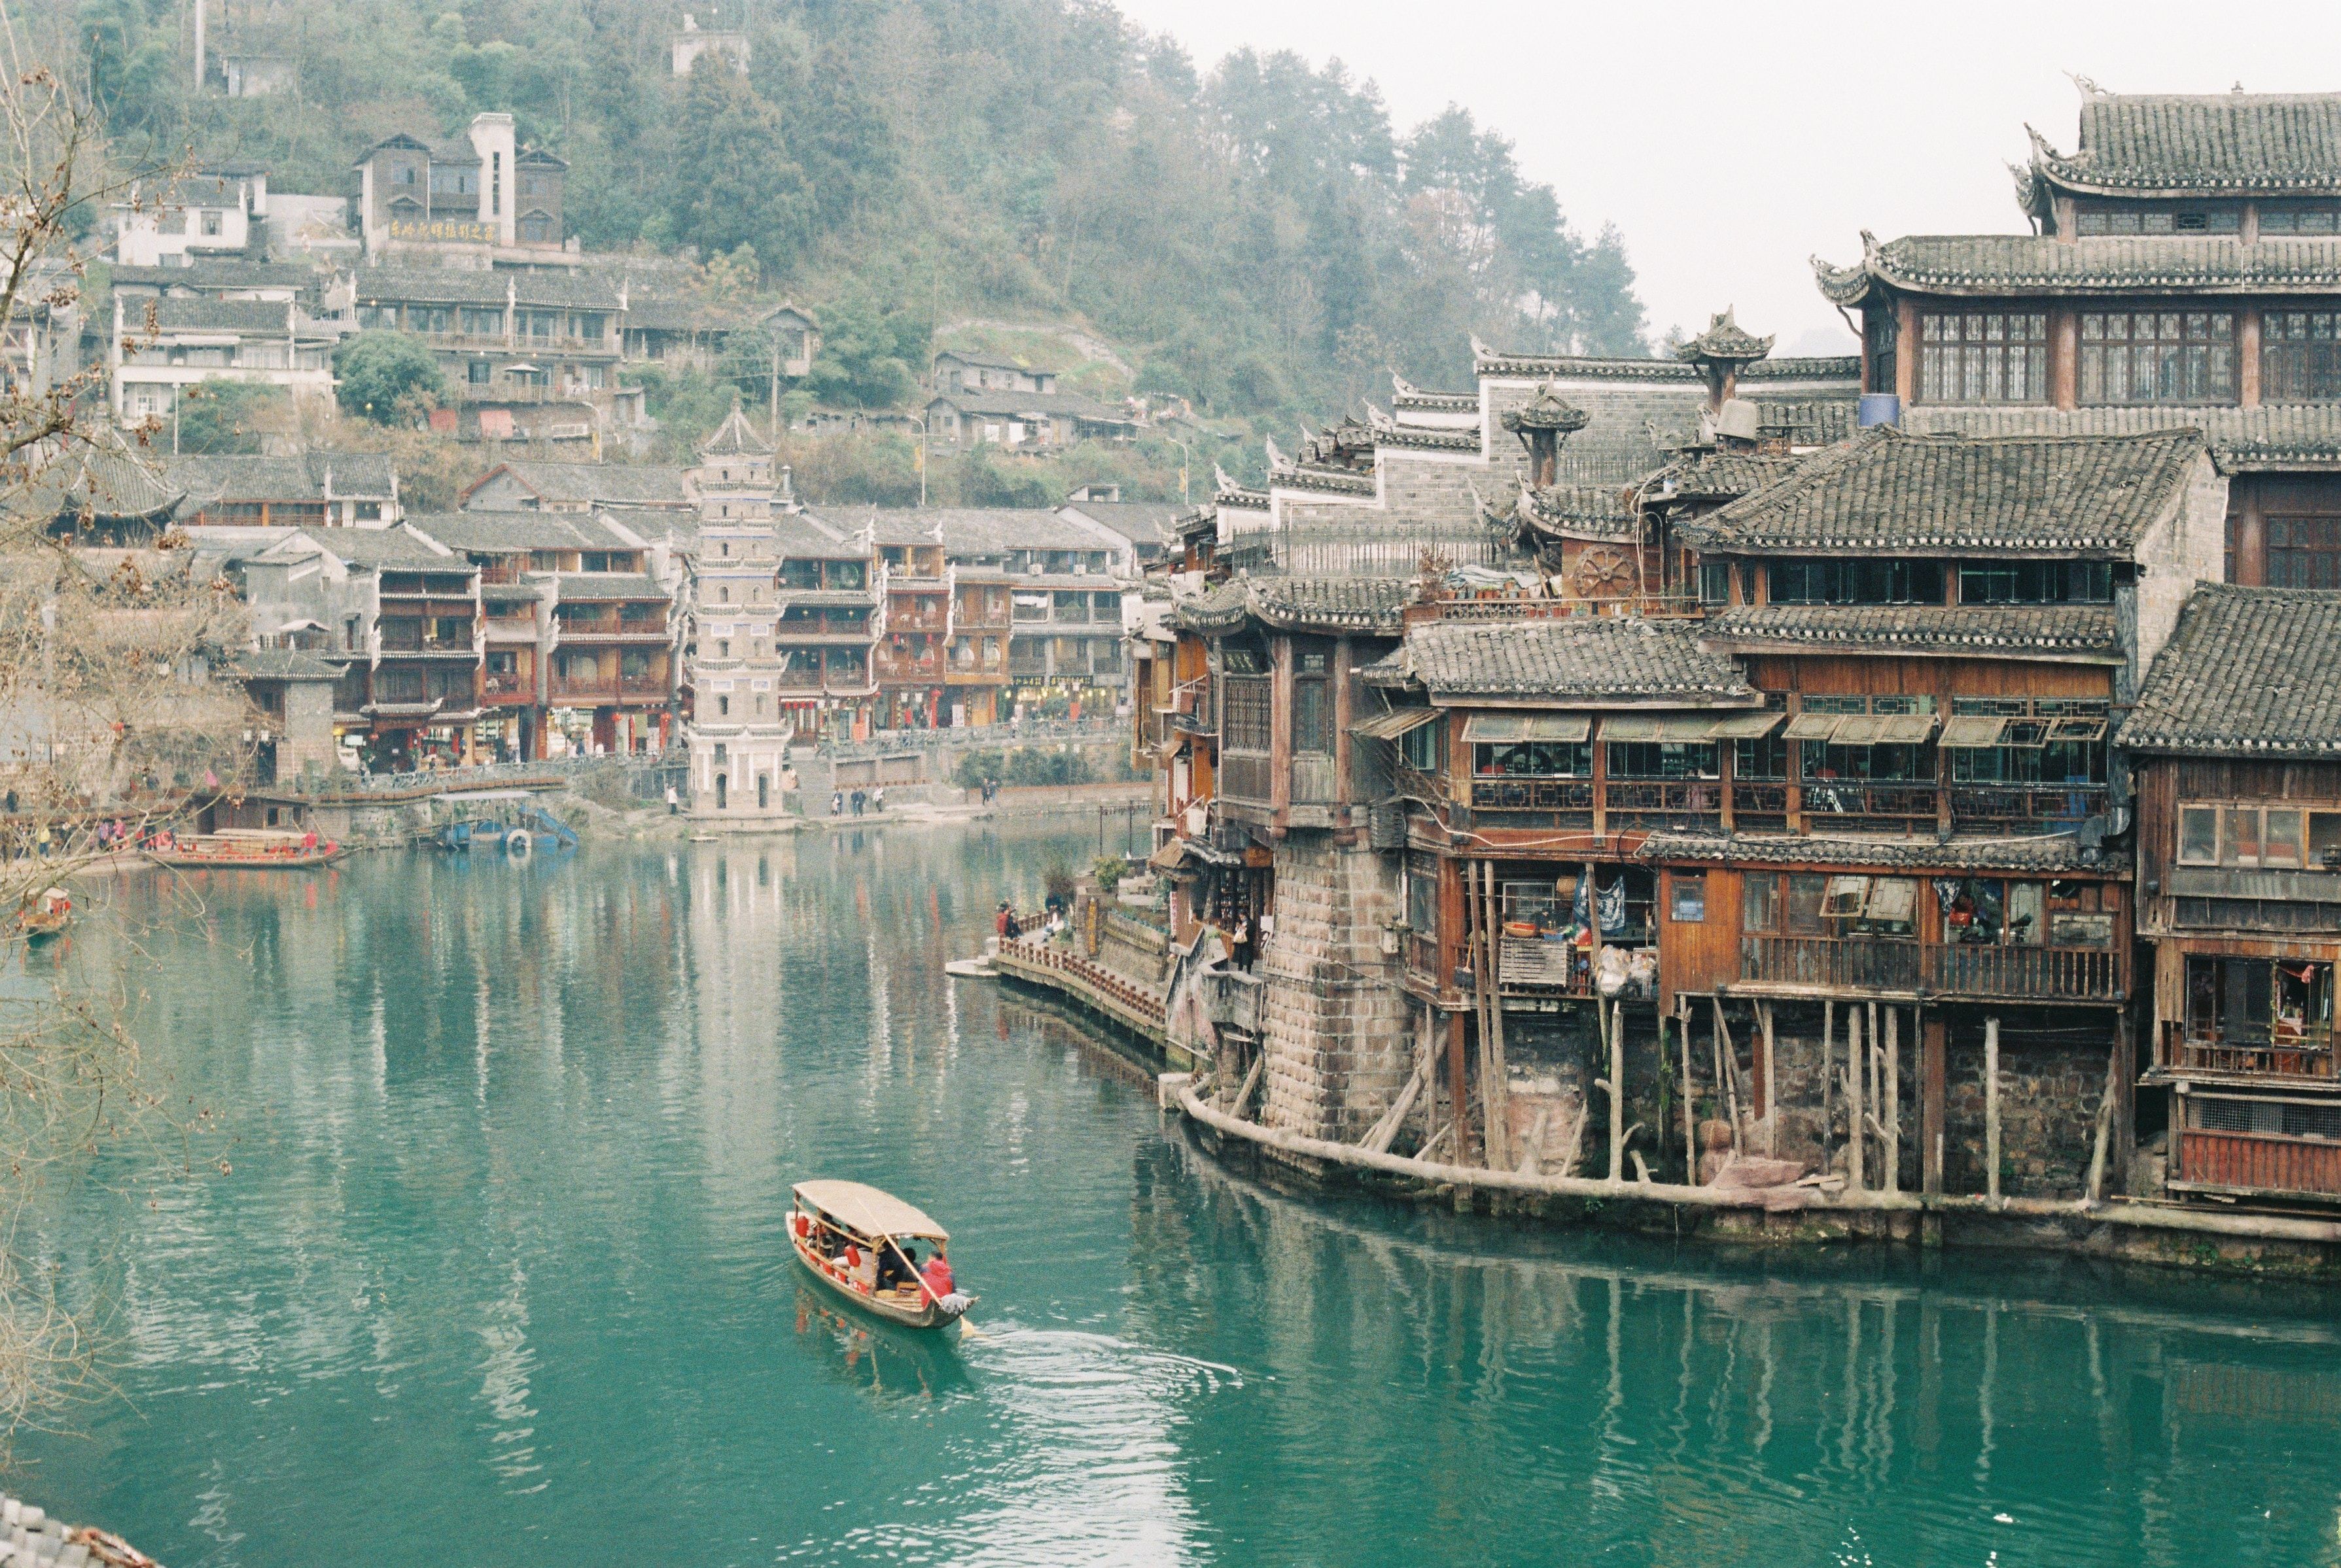 Um barco fluvial navegando em um rio na província de Fenghuang, China